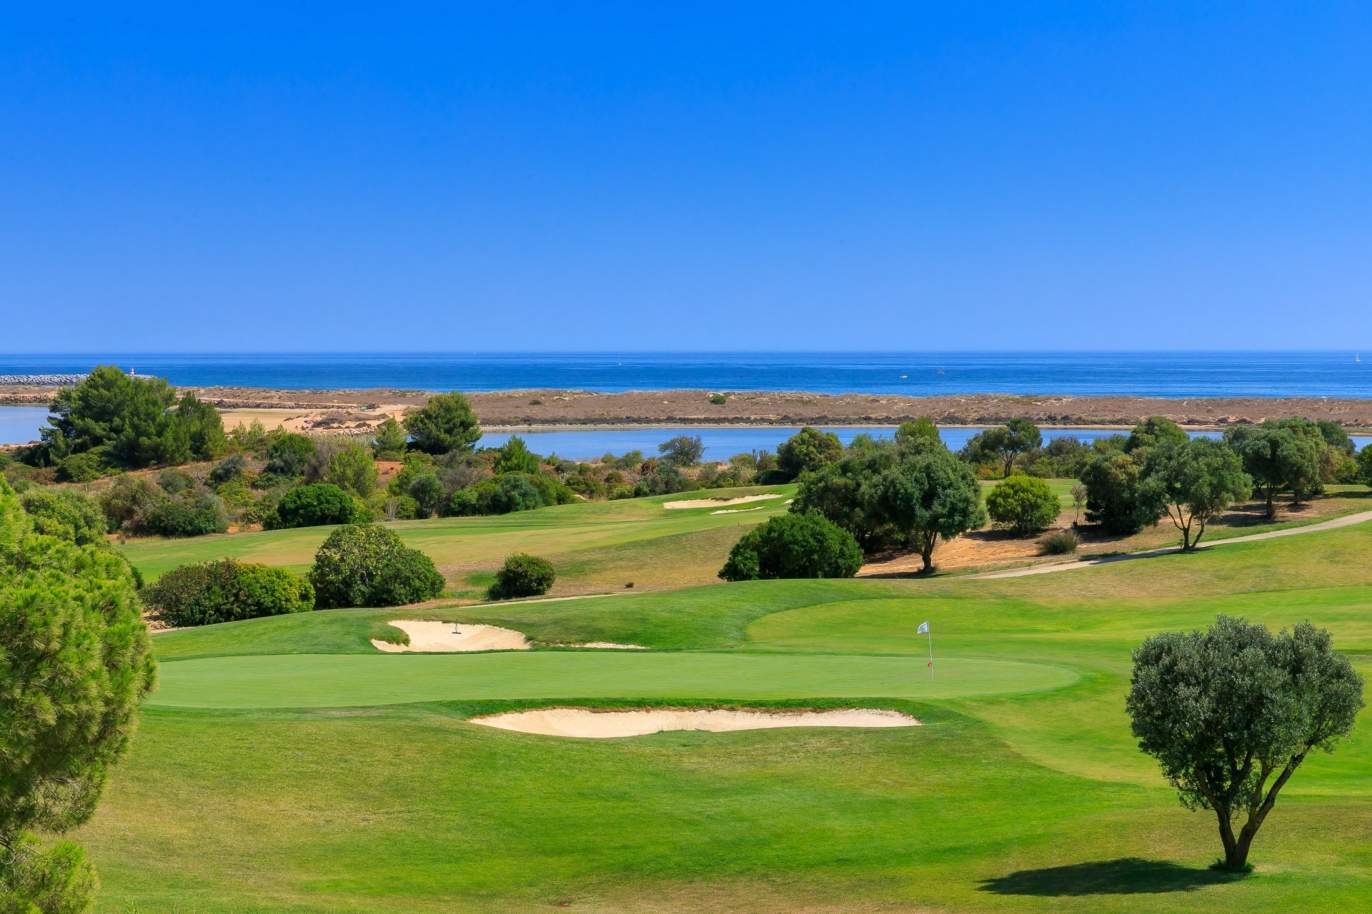 Terrain à vendre dans un complexe de golf, Lagos, Algarve, Portugal_123039